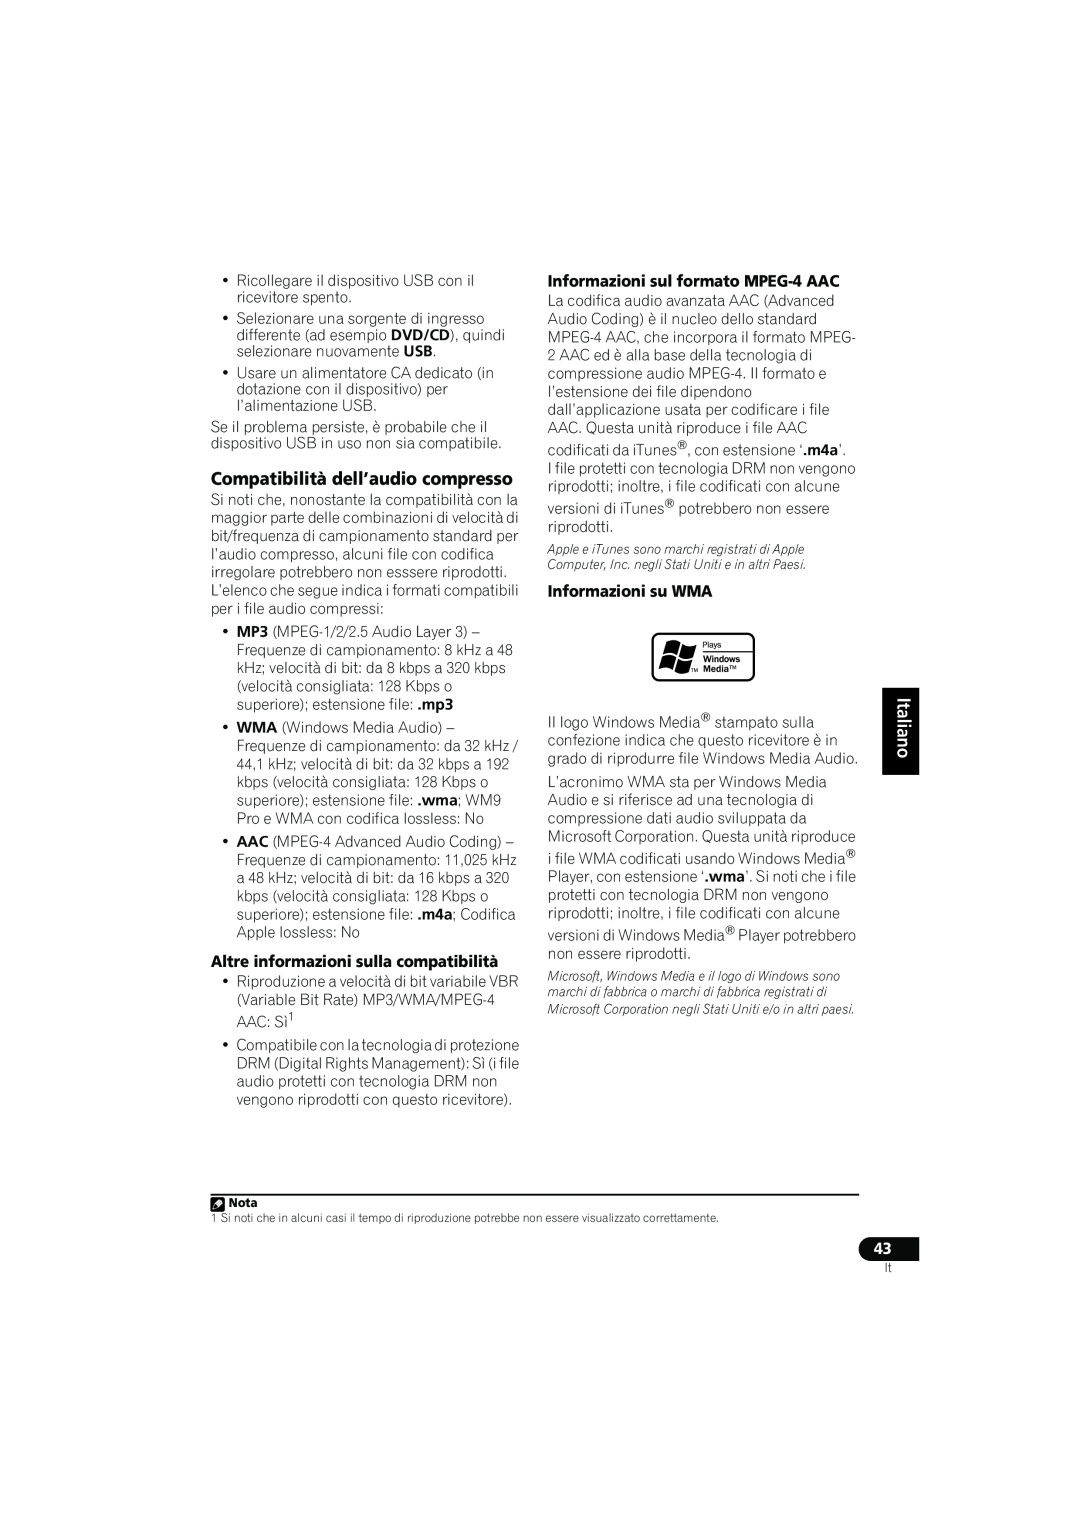 Pioneer VSX-416-K manual Compatibilità dell’audio compresso, Altre informazioni sulla compatibilità, Informazioni su WMA 